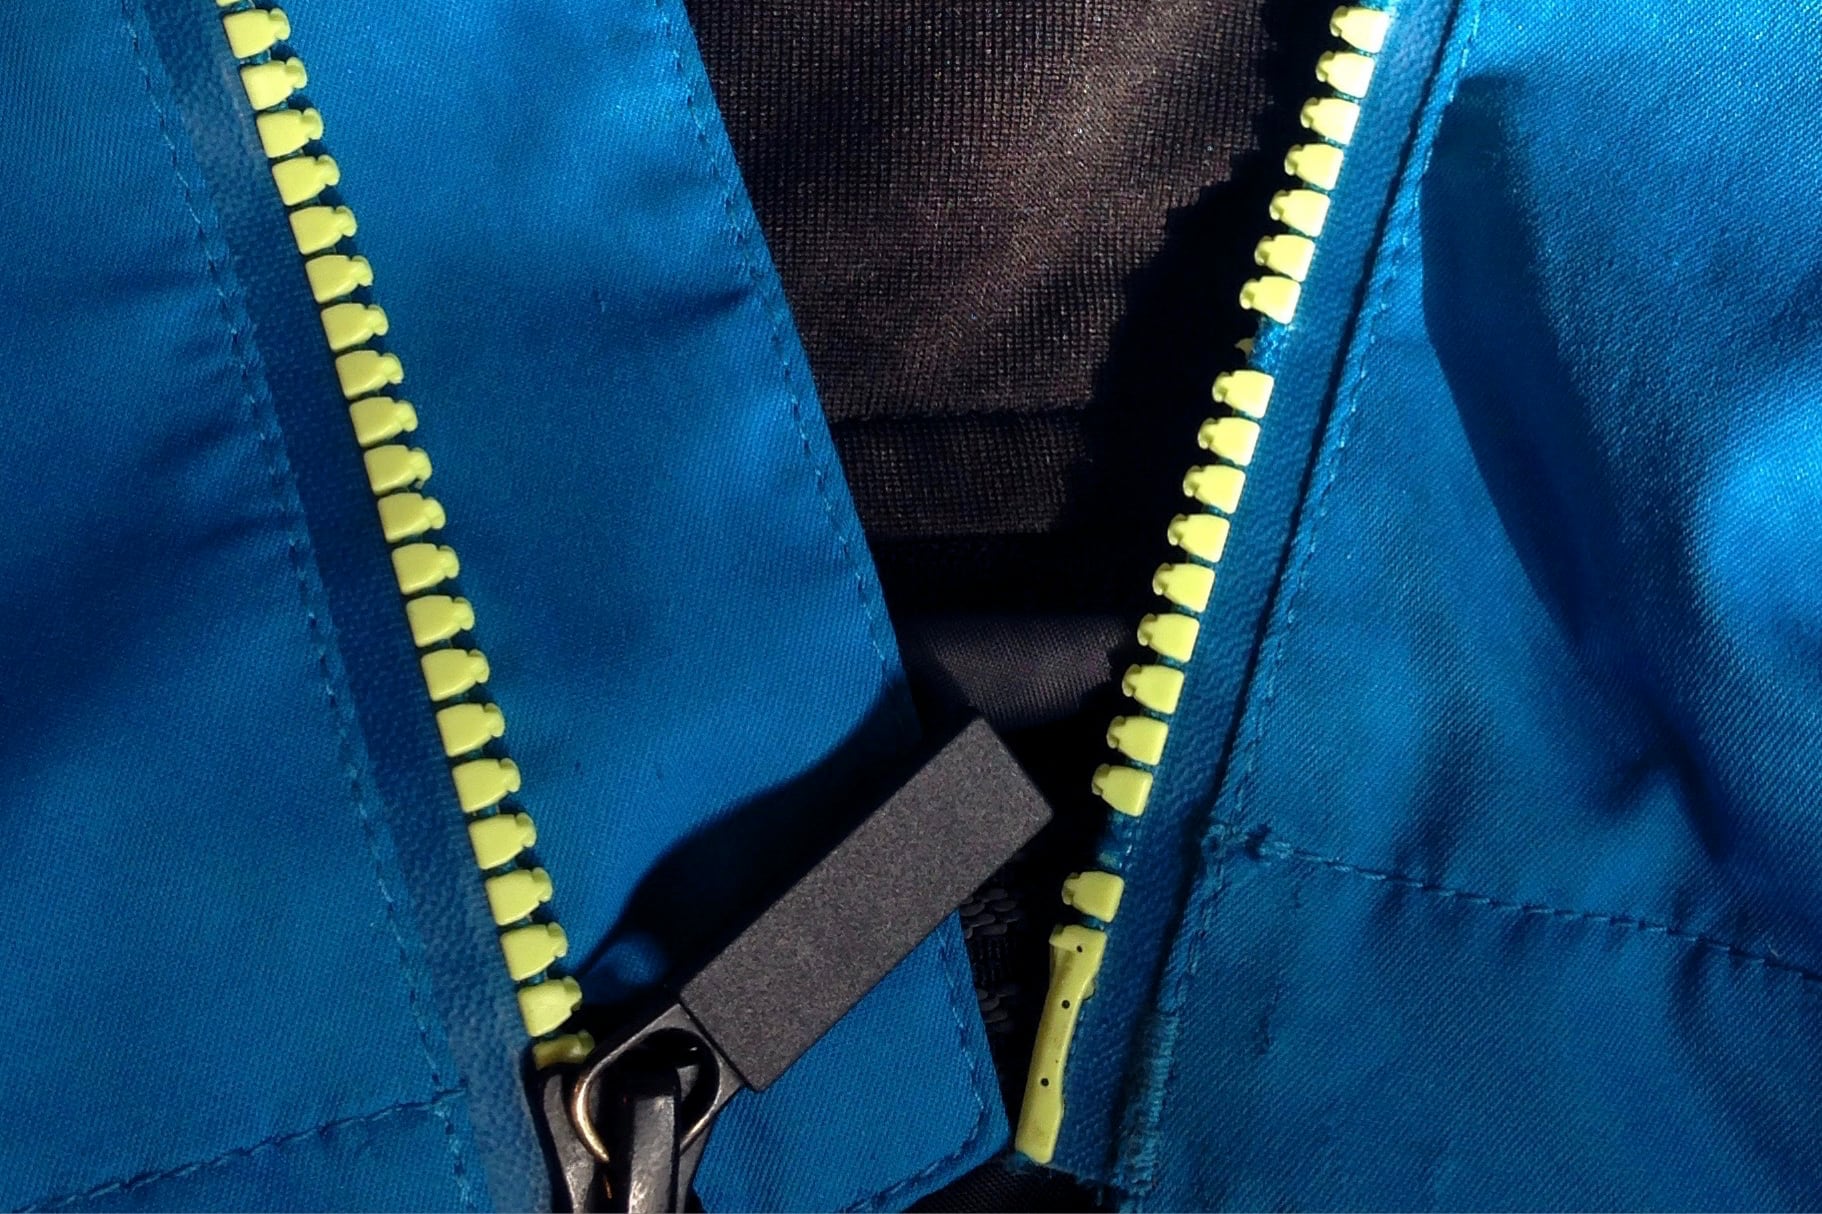 Zipper Repair – Rugged Thread